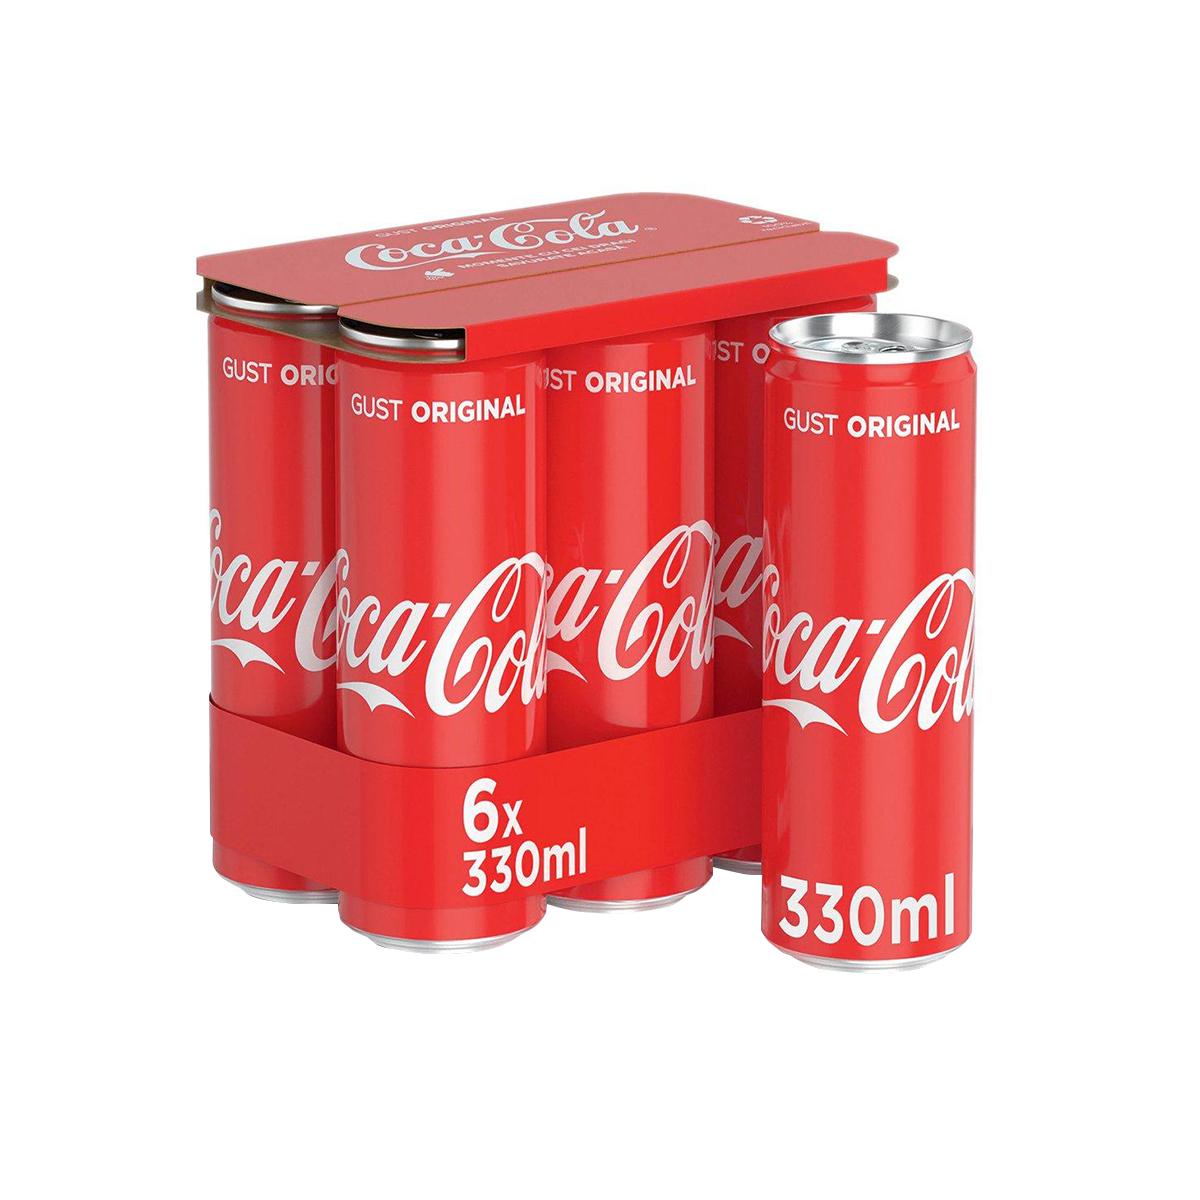 Bautura racoritoare carbogazoasa Coca-Cola, 0.33 l, 6 bucati/bax